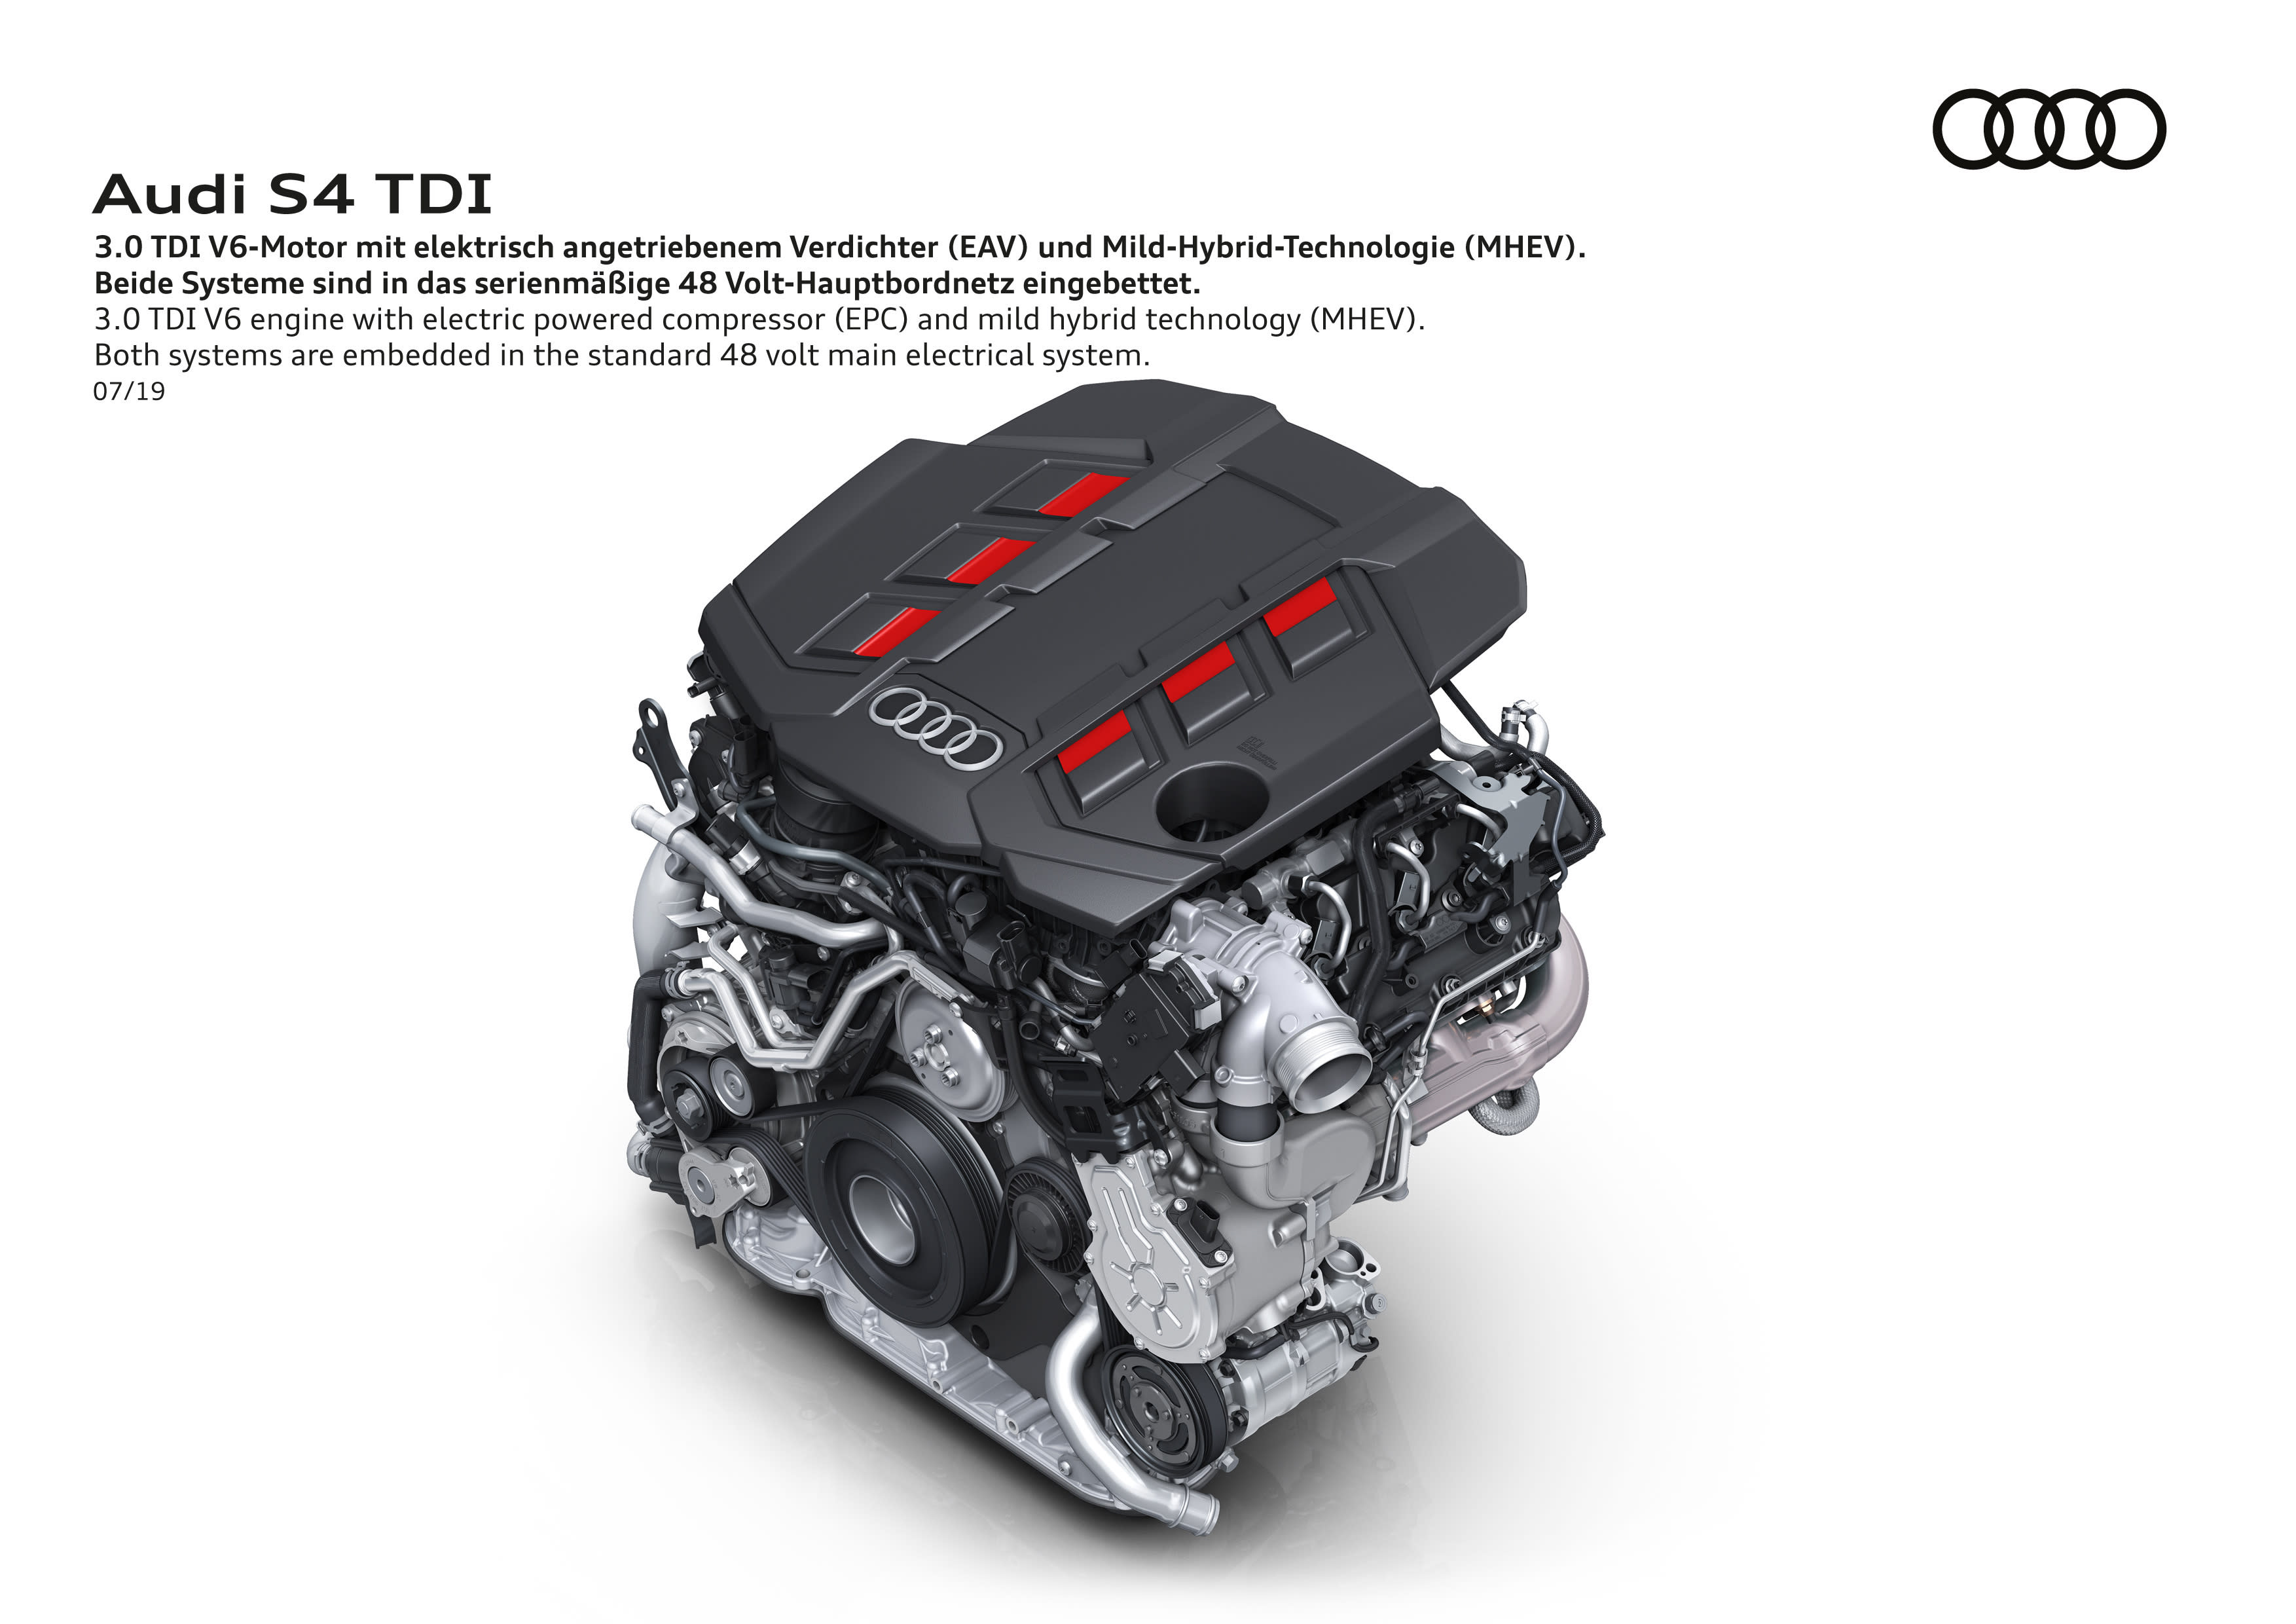 3.0 TDI V6-Motor mit elektrisch angetriebnem Verdichter (EAV) und Mild-Hybrid-Technologie (MHEV).